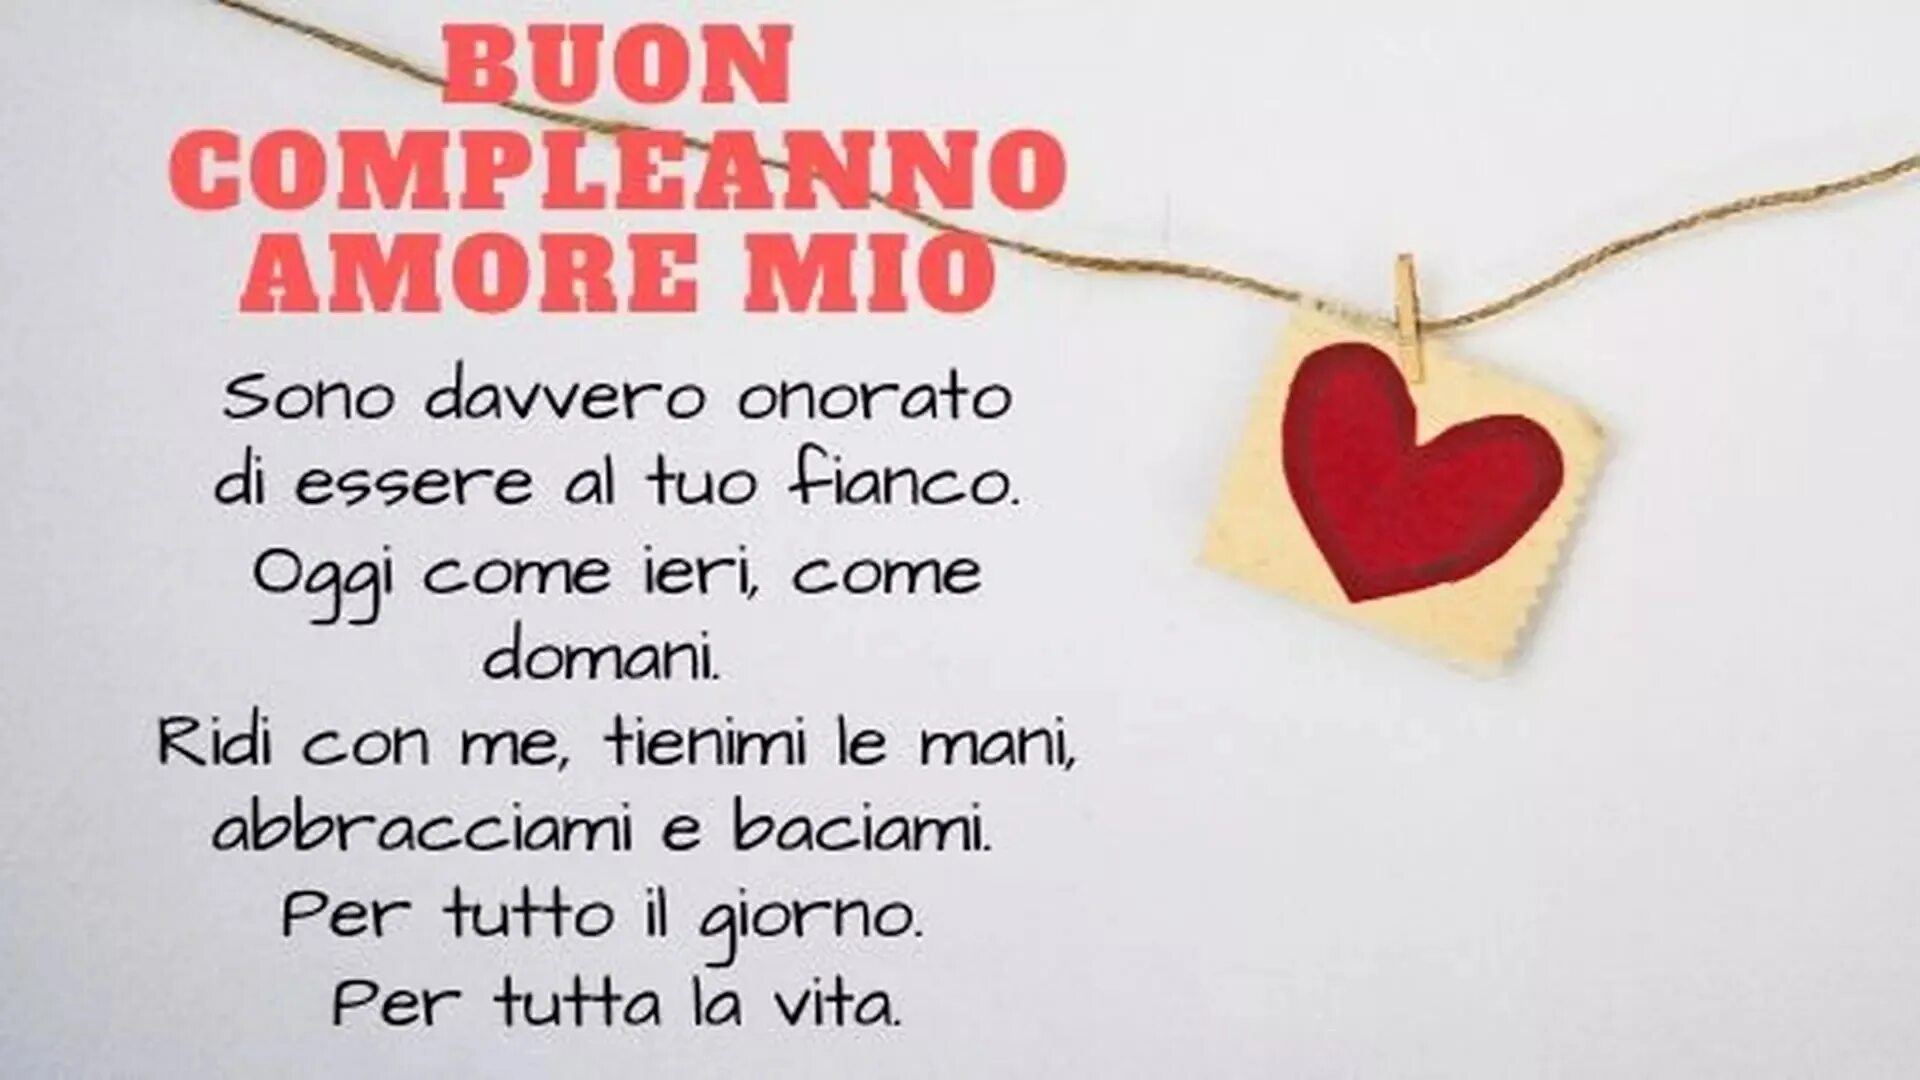 Amore язык. Buon compleanno Amore mio картинки. Amore mio buon compleanno гифка. Buon compleanno открытки на итальянском языке. Аморе Мио перевод.